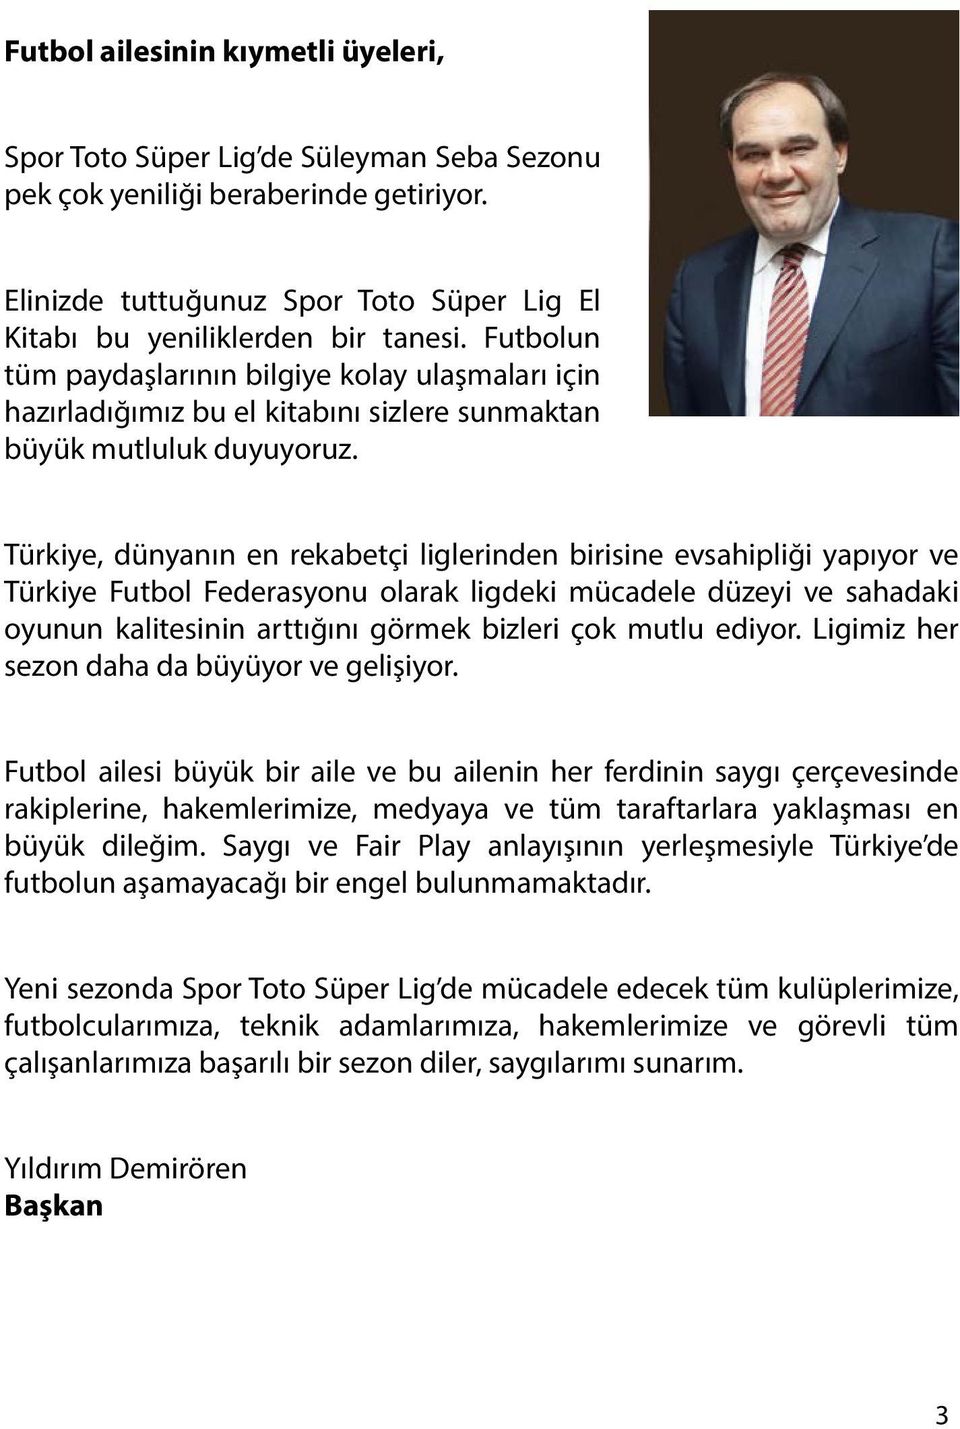 Türkiye, dünyanın en rekabetçi liglerinden birisine evsahipliği yapıyor ve Türkiye Futbol Federasyonu olarak ligdeki mücadele düzeyi ve sahadaki oyunun kalitesinin arttığını görmek bizleri çok mutlu